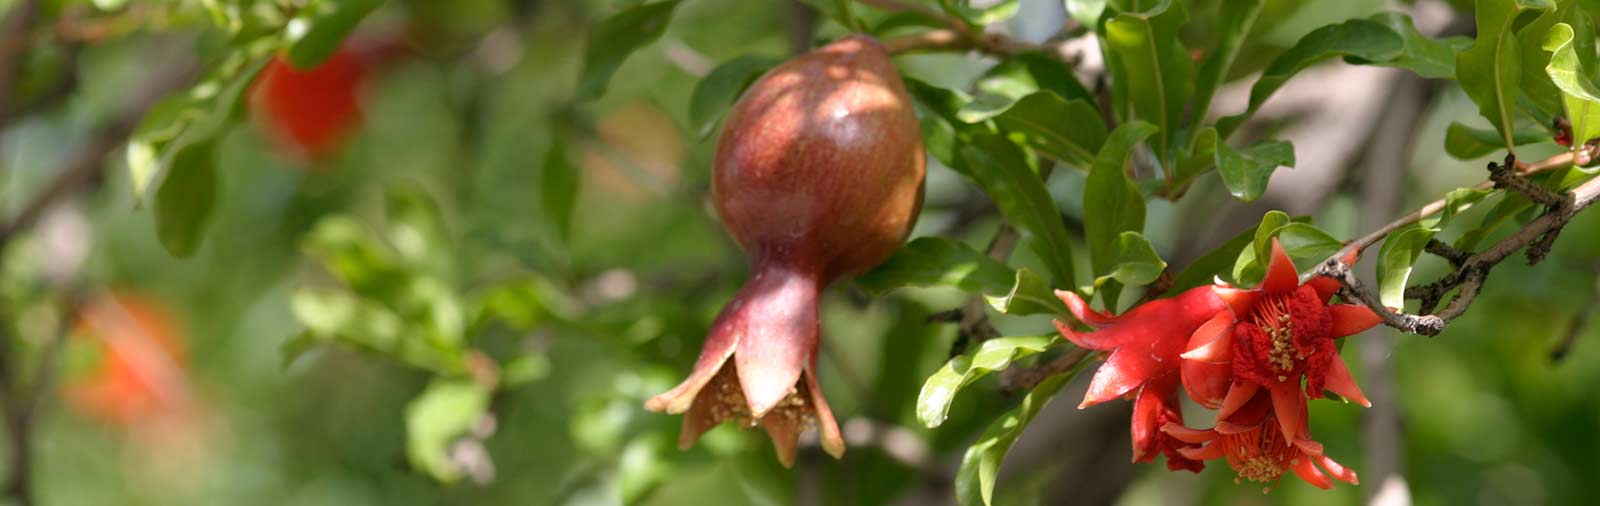 Granatapfel - Punica granatum L.